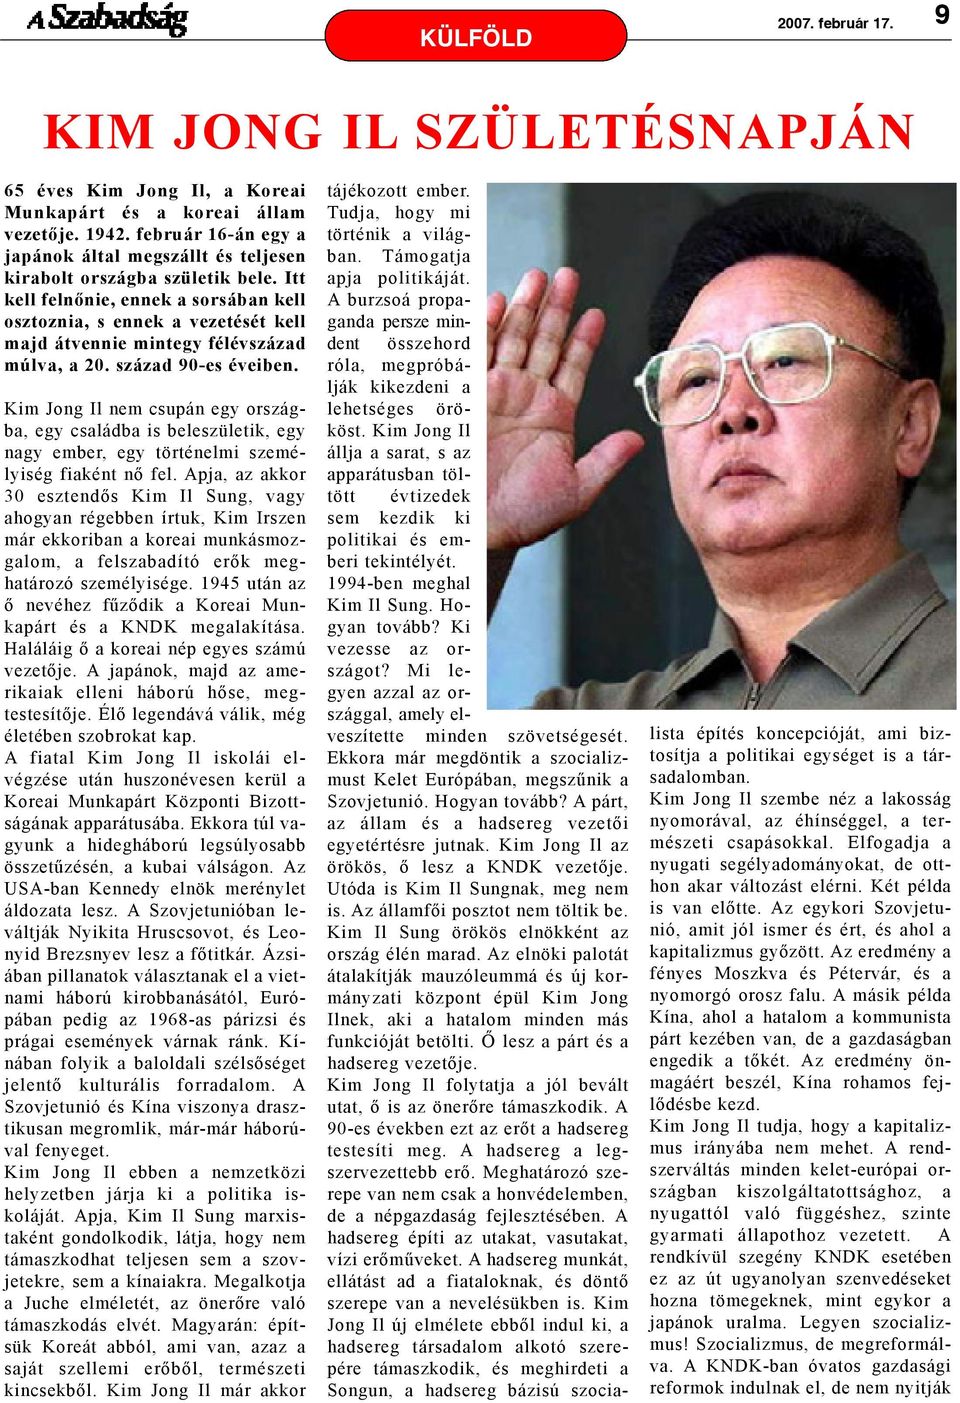 Kim Jong Il nem csupán egy országba, egy családba is beleszületik, egy nagy ember, egy történelmi személyiség fiaként nõ fel.